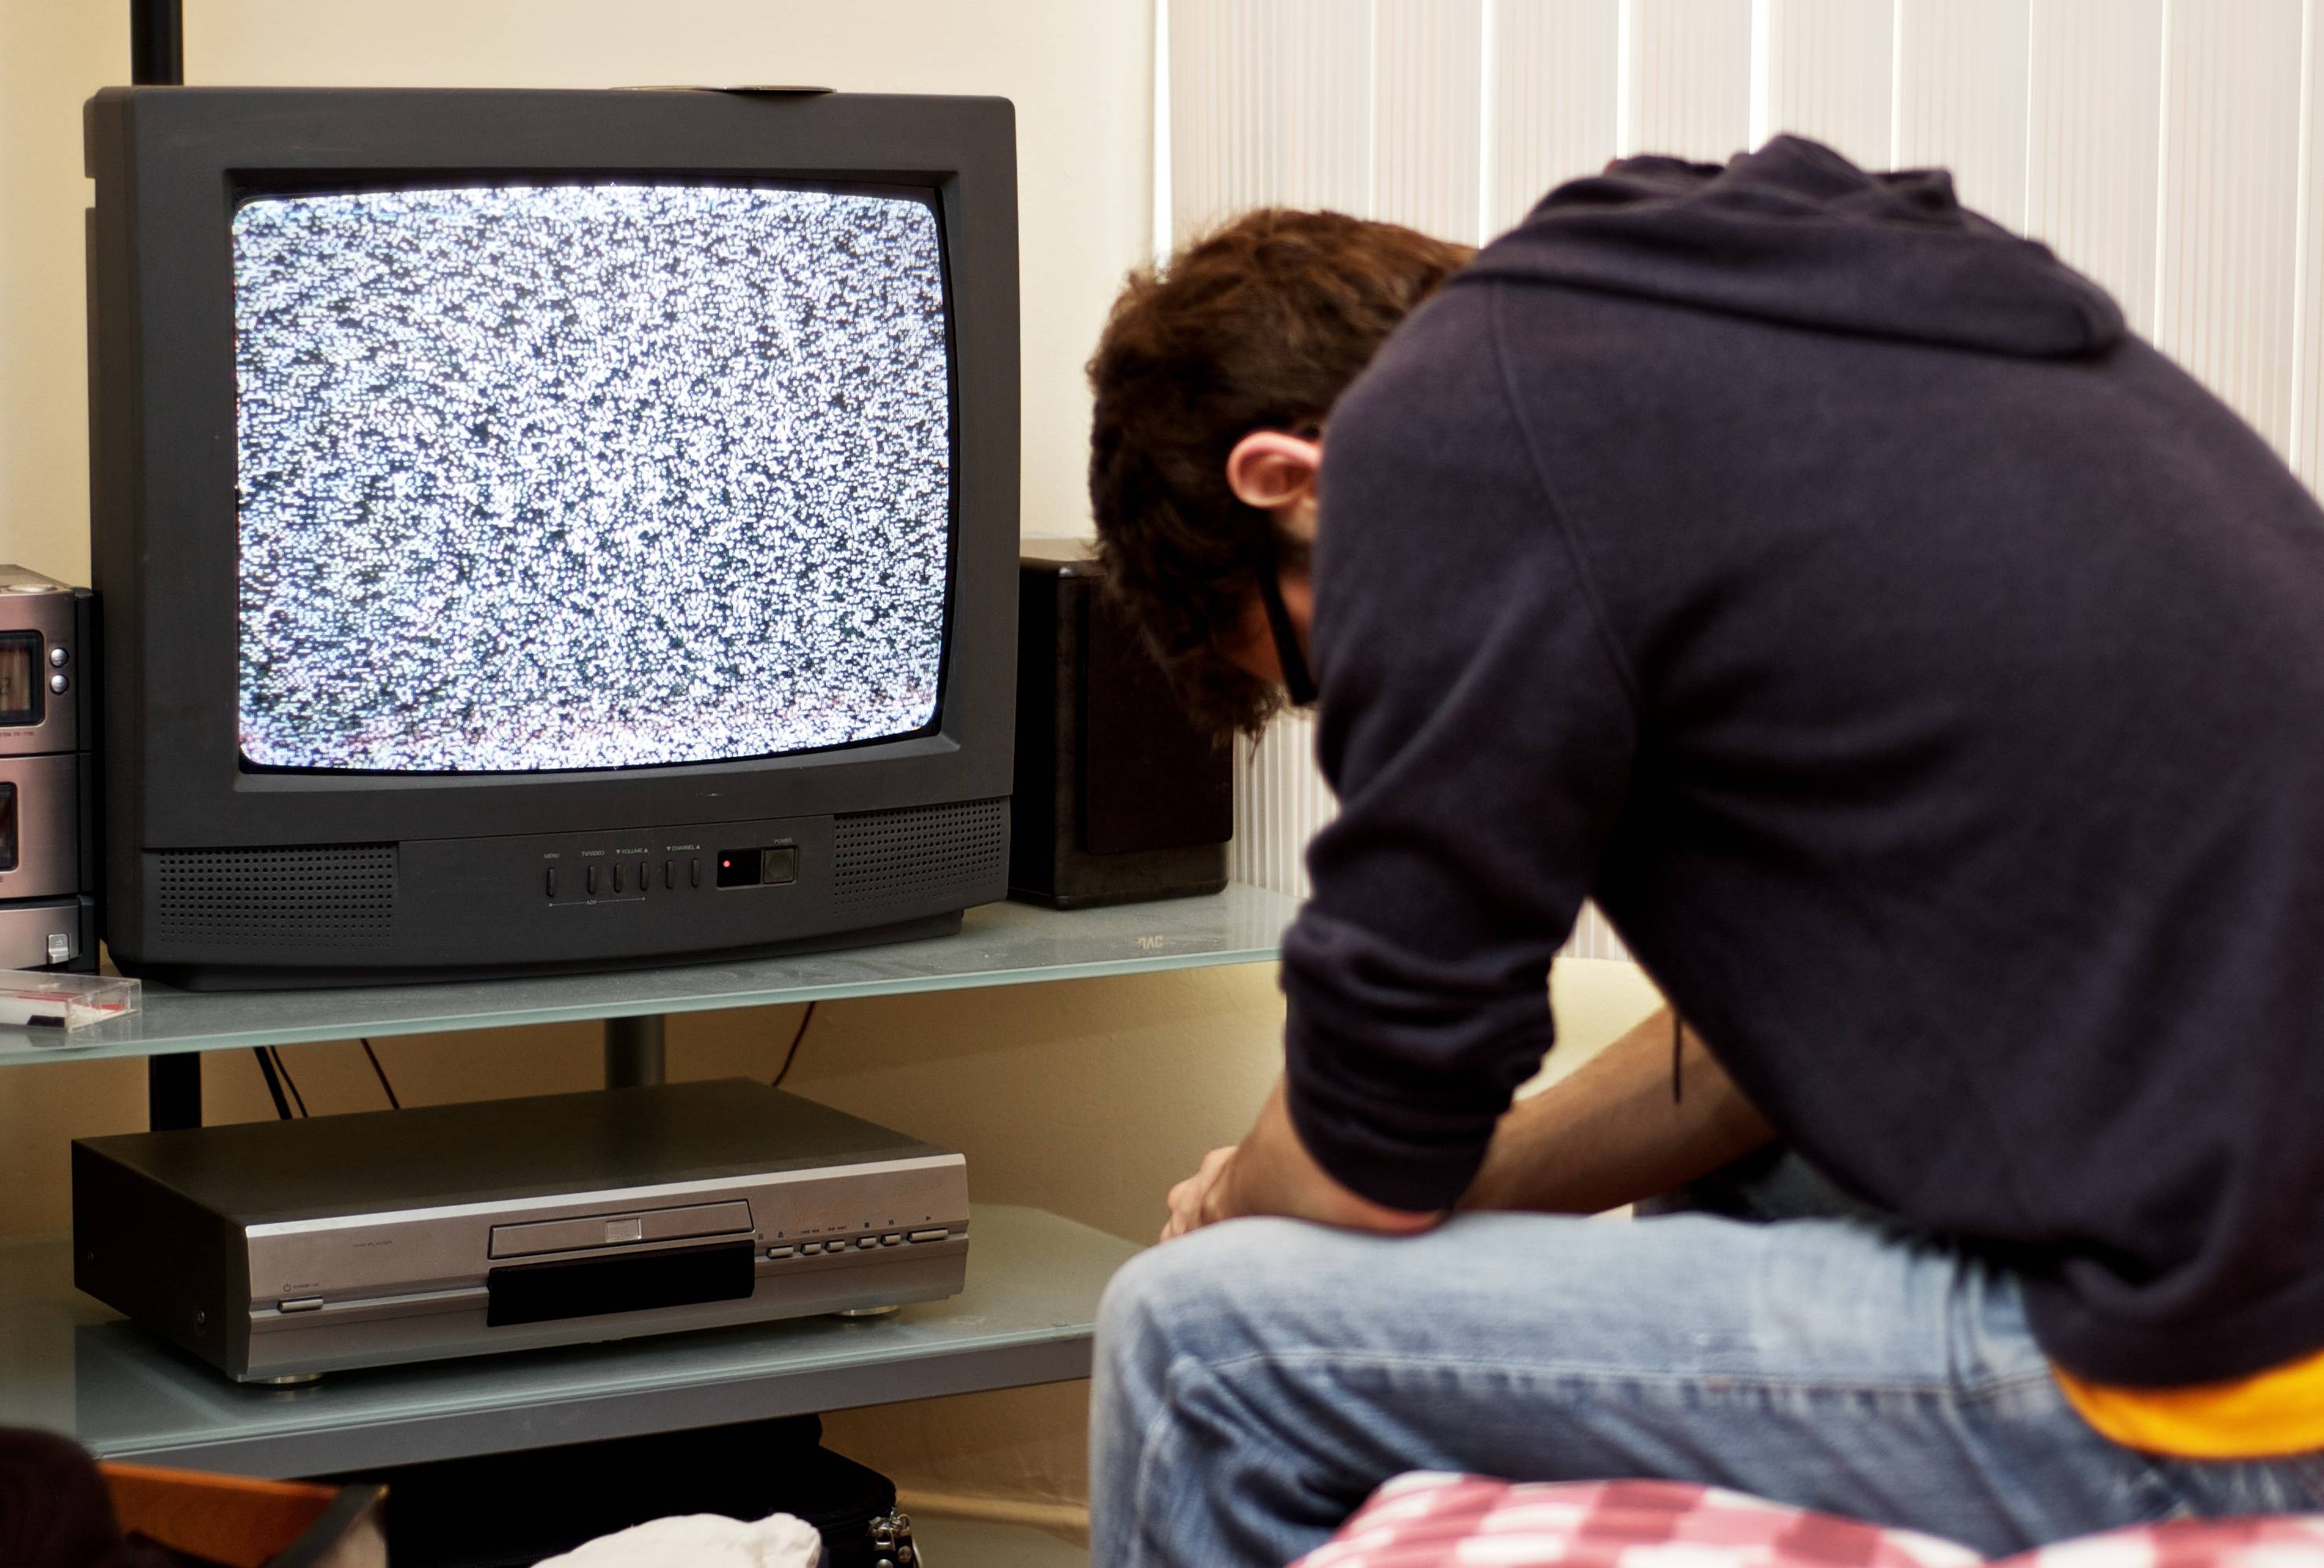 Сегодня по телевизору есть какие. Телевизор. Аналоговое Телевидение. Сломанный телевизор. Аналоговый телевизор.